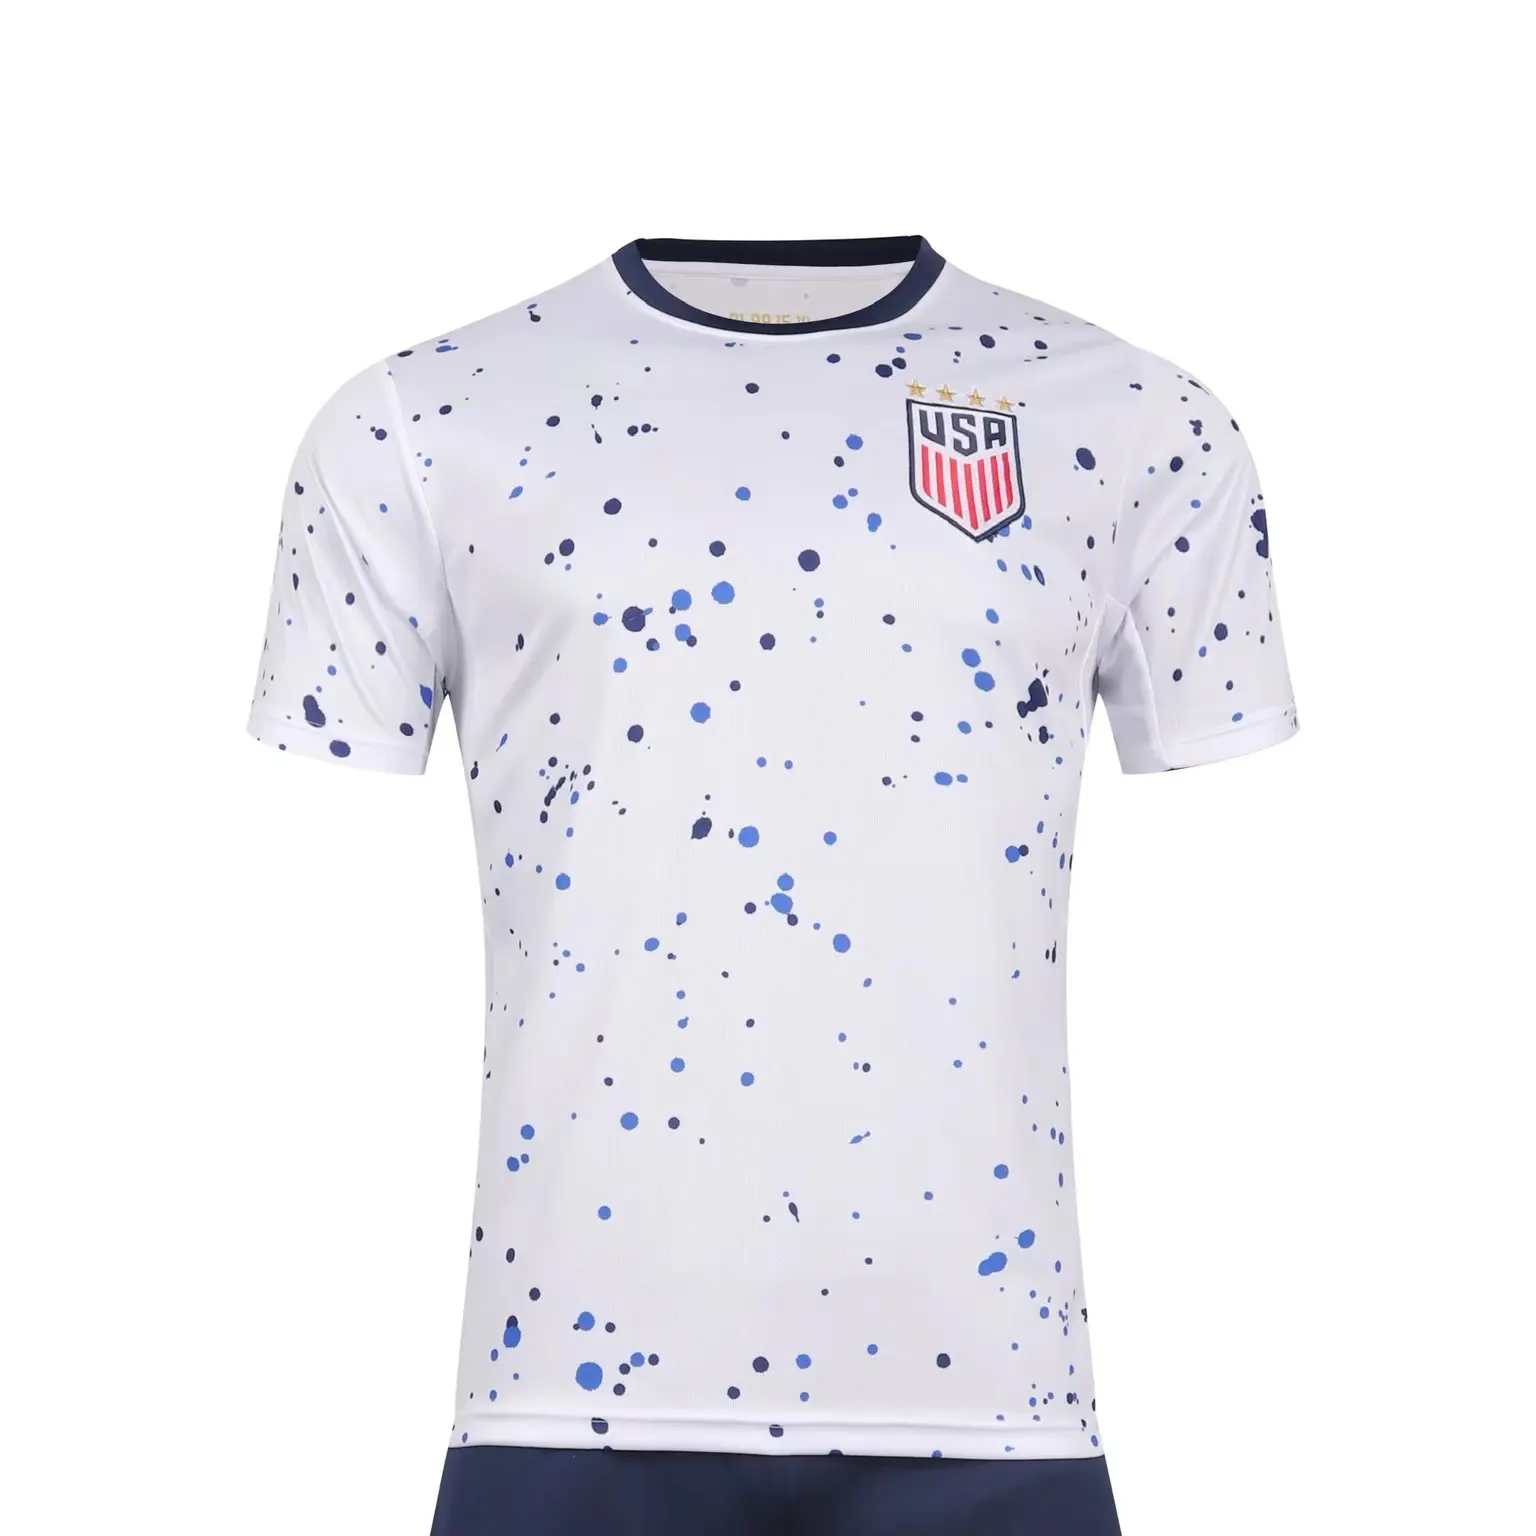 Kaus sepak bola wanita kustom seragam sepak bola kaus khusus kaus latihan set klub kaus sepak bola Amerika Serikat